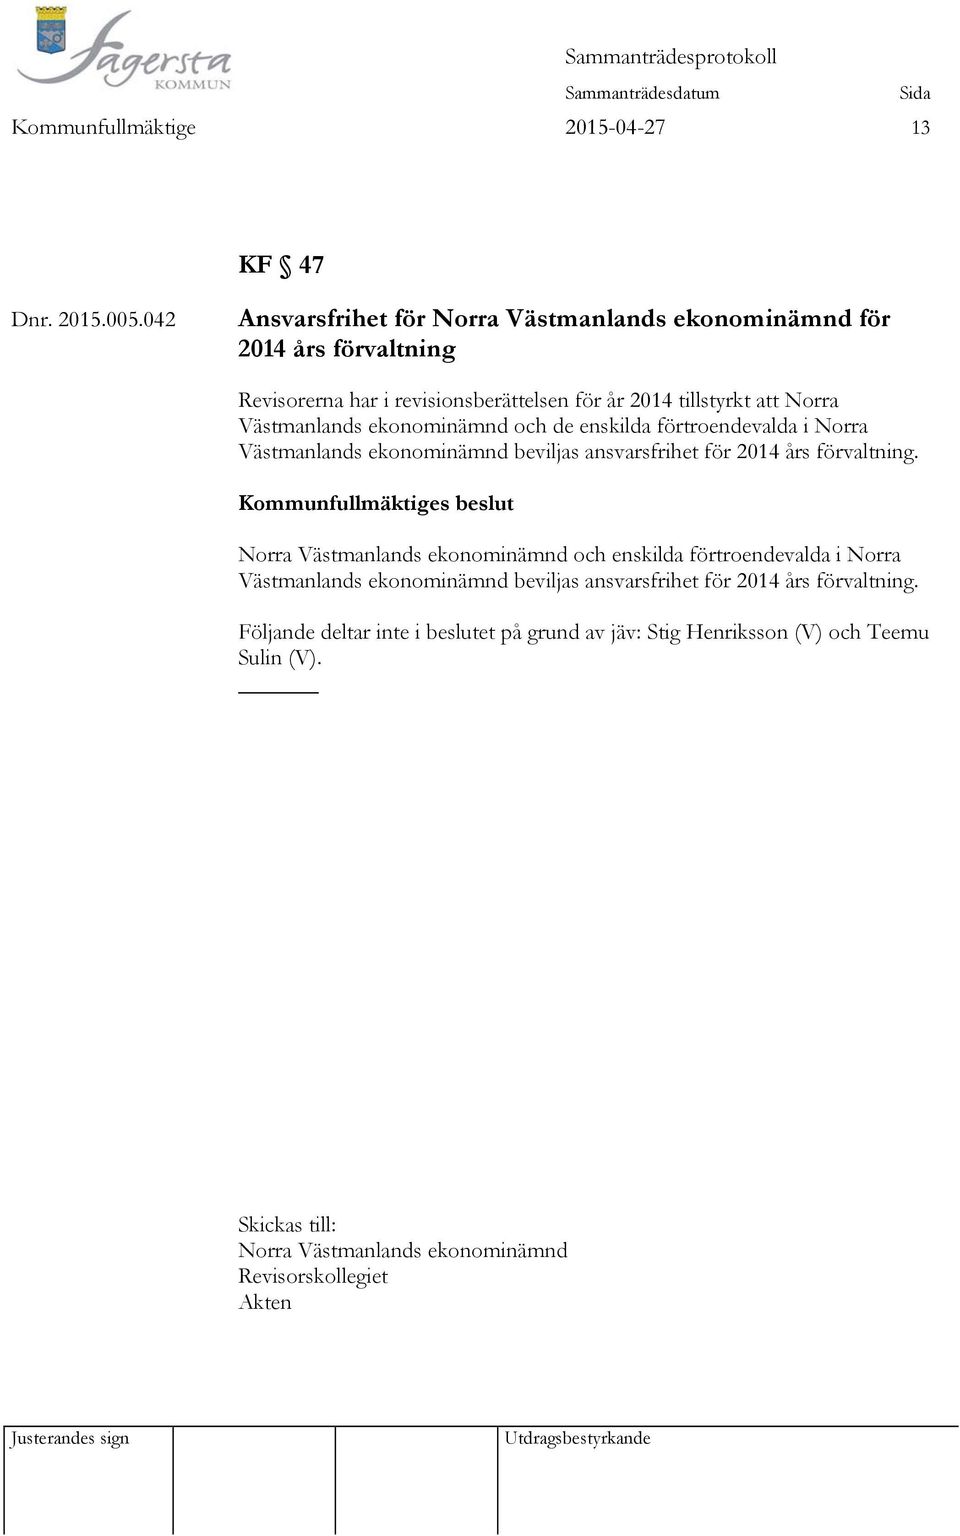 Västmanlands ekonominämnd och de enskilda förtroendevalda i Norra Västmanlands ekonominämnd beviljas ansvarsfrihet för 2014 års förvaltning.